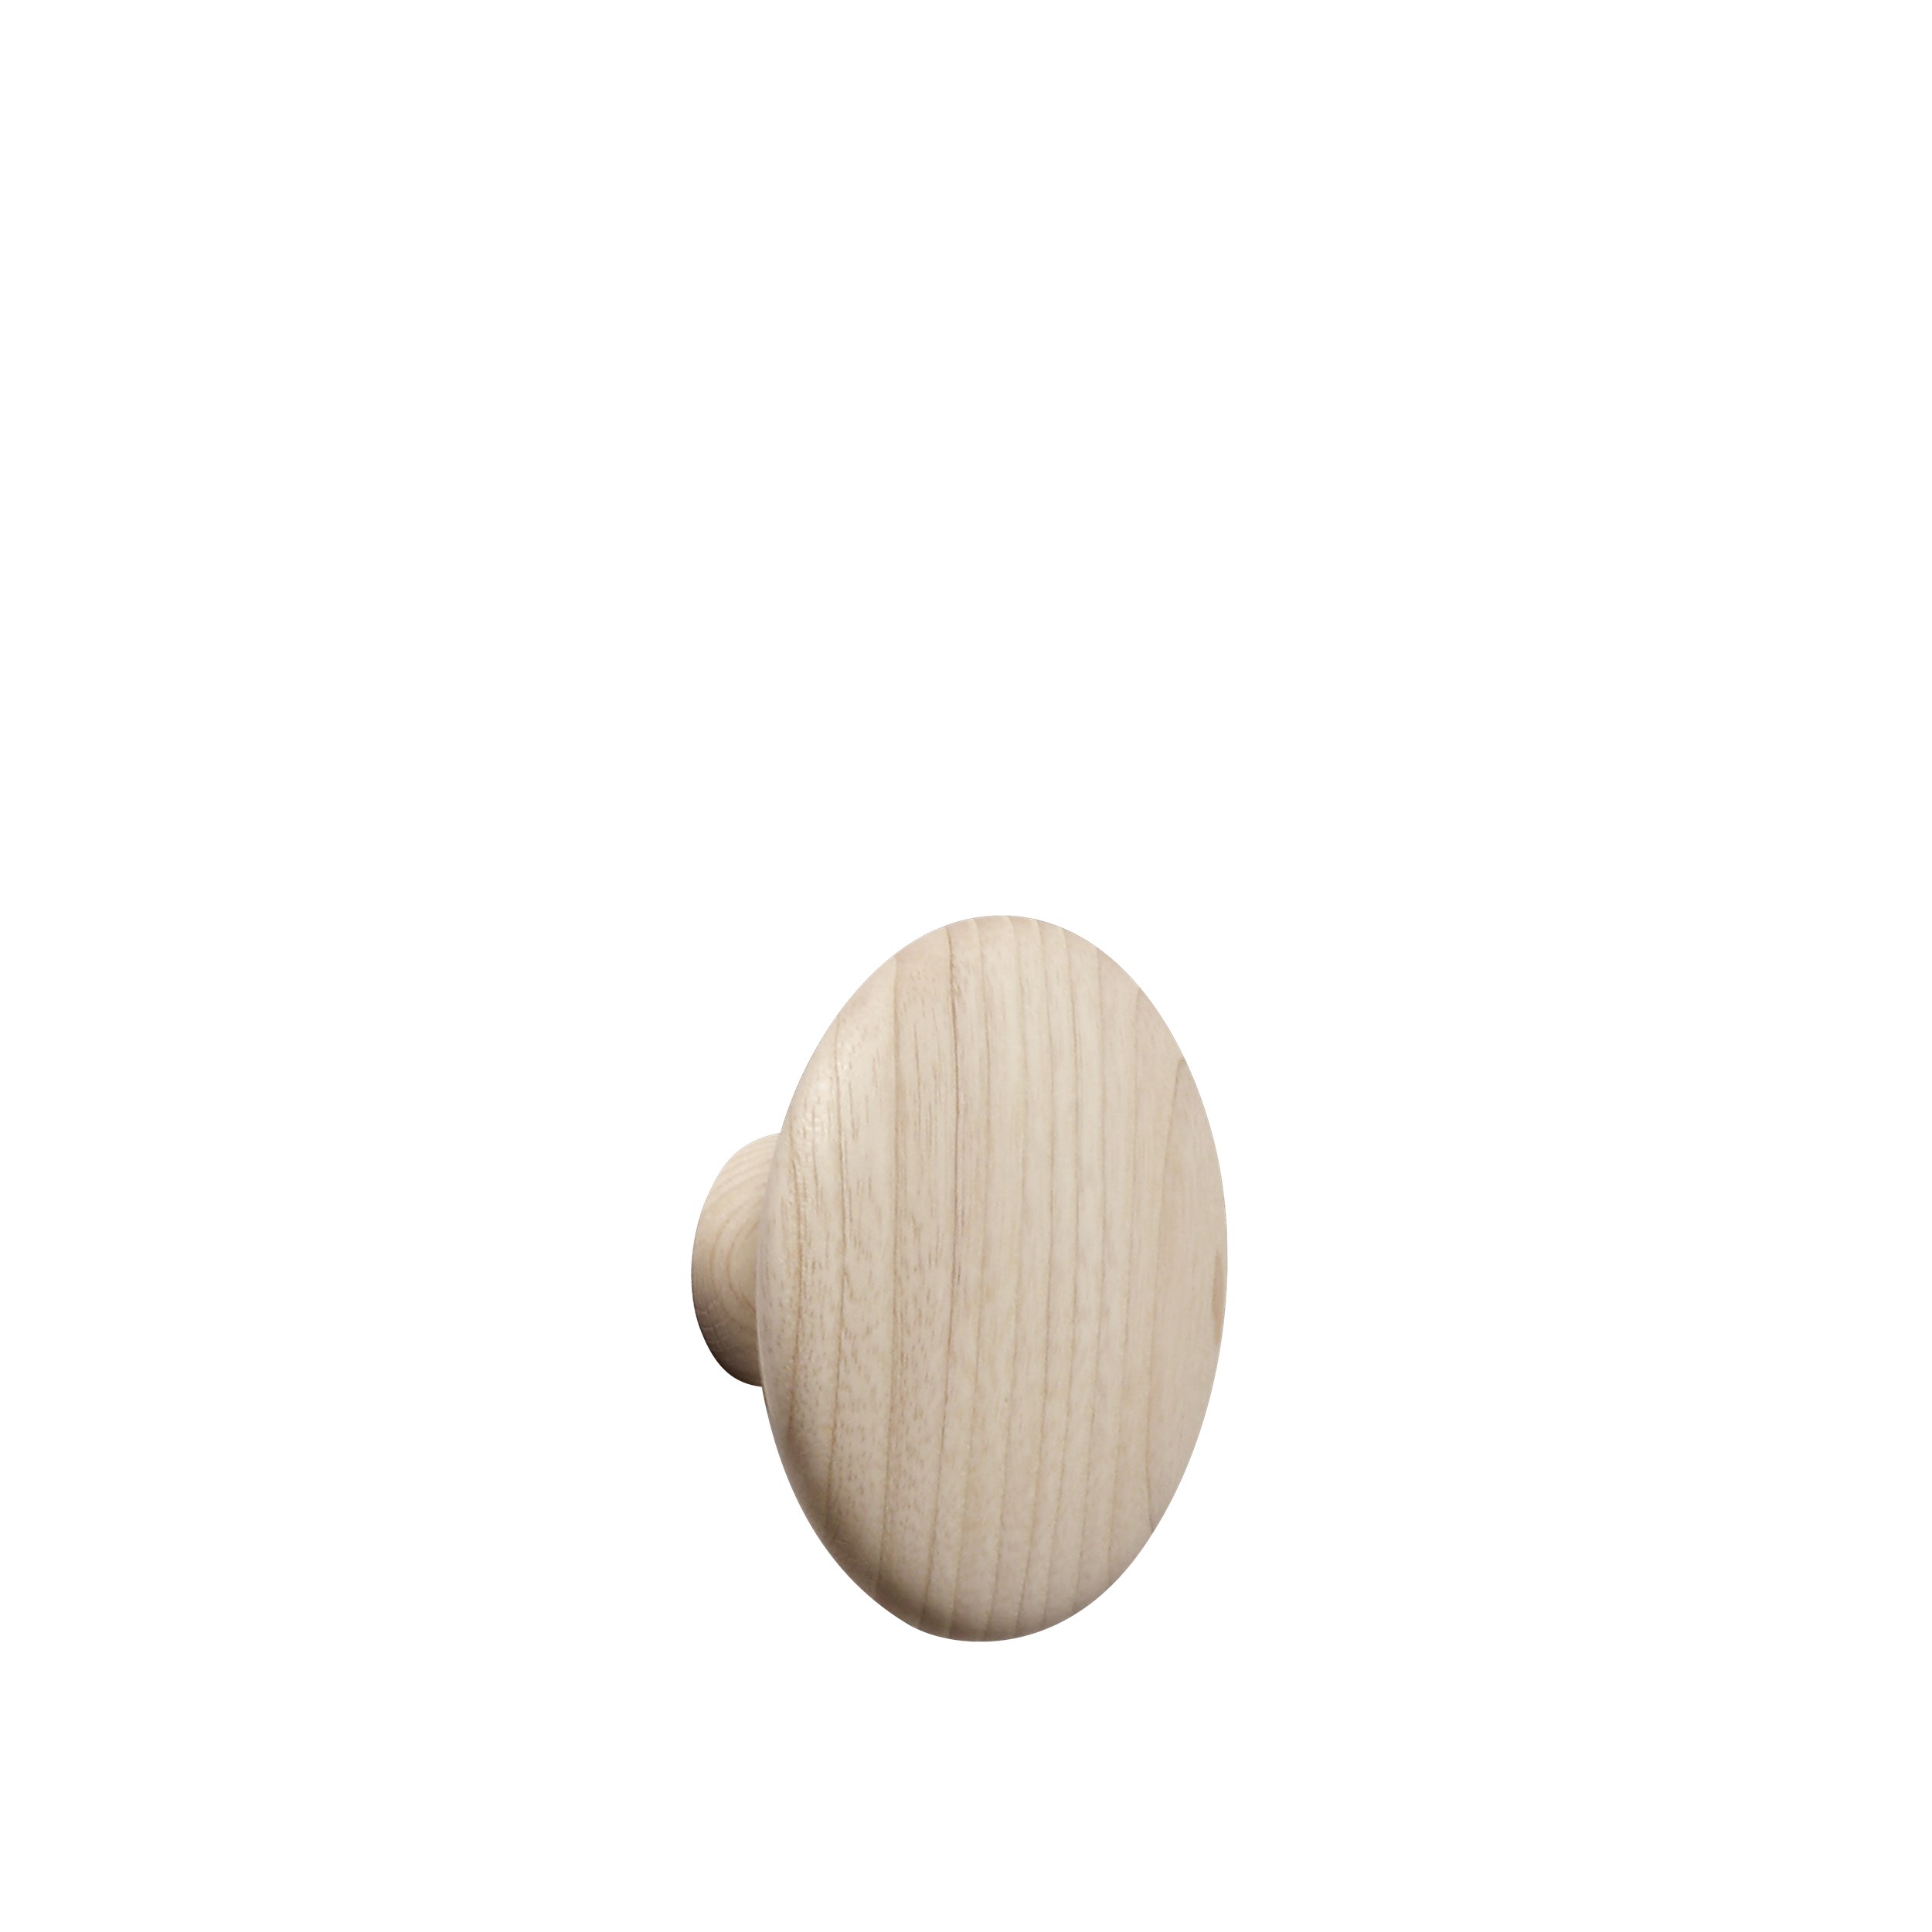 Dot wood medium Ø 13 cm ash